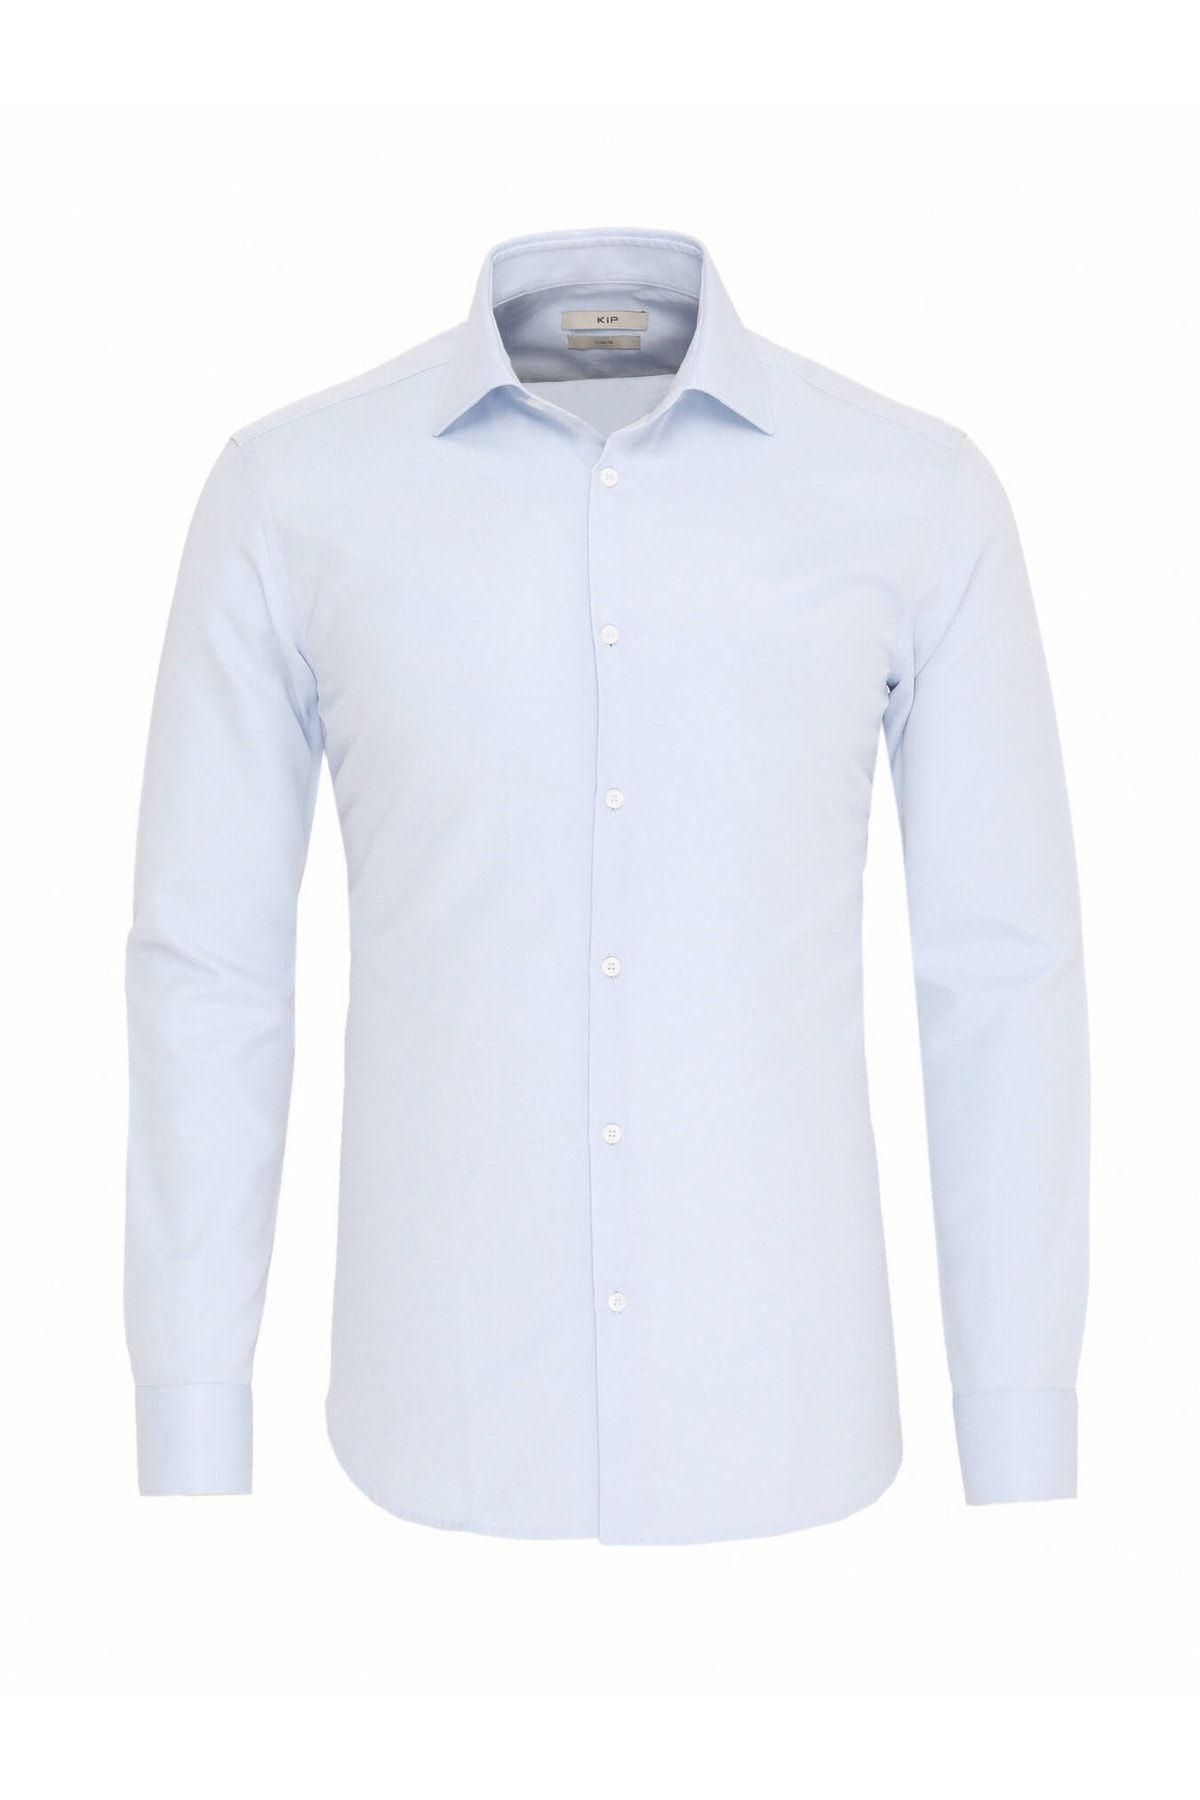 Kip Açık Mavi Düz Slim Fit Dokuma Klasik Pamuk Karışımlı Gömlek